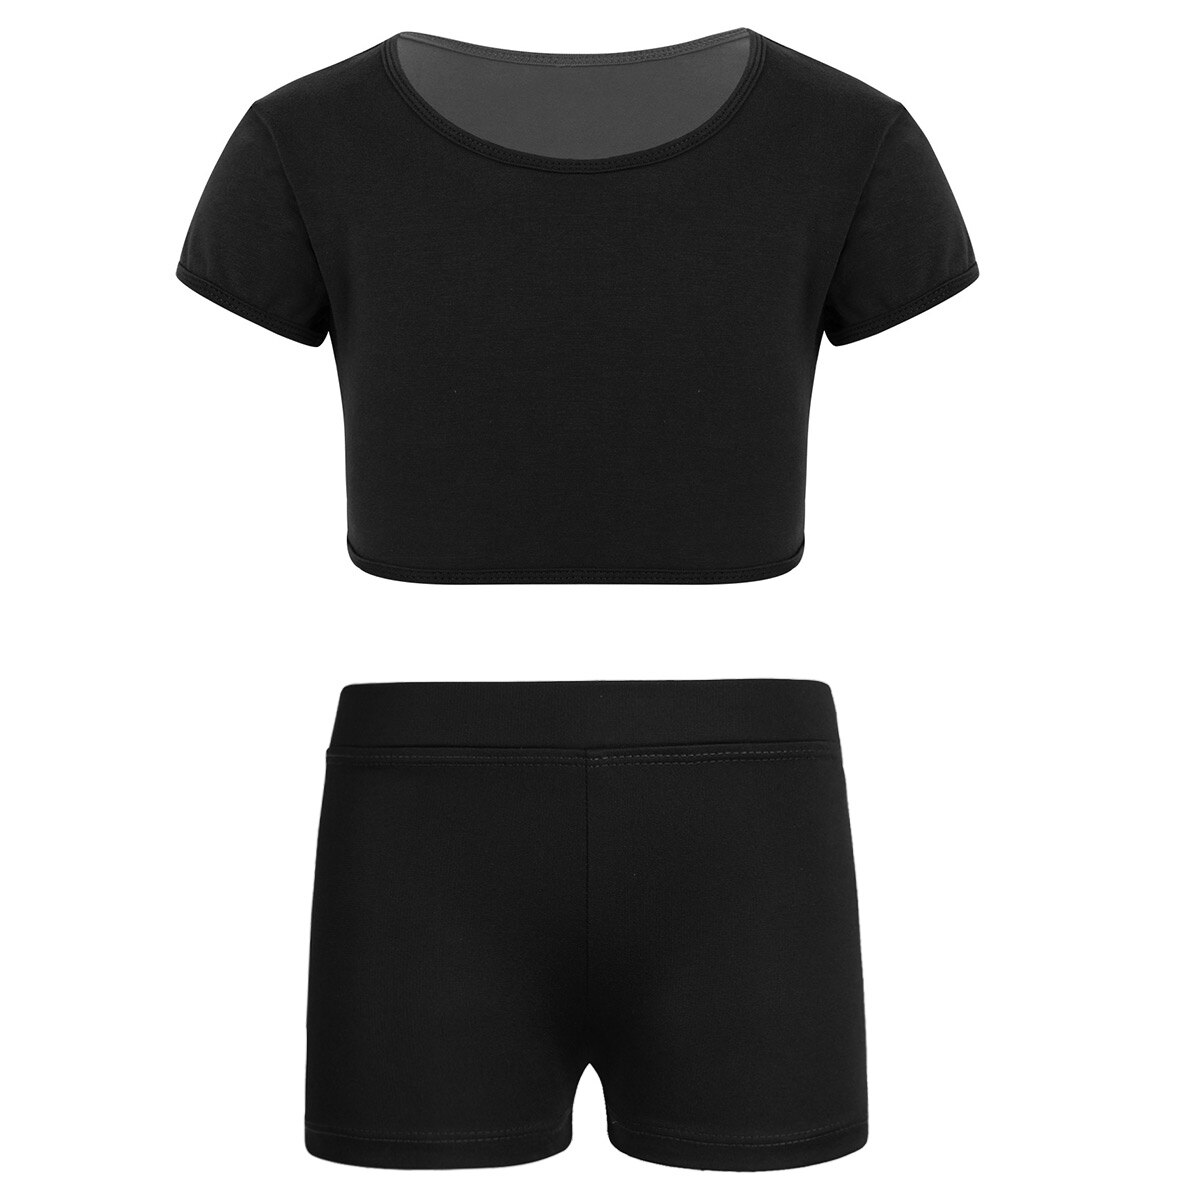 Børnepiger almindelig ensfarvet korte ærmer t-shirt crop top med v-front linning shorts shorts til sports gymnastik træning: Xl